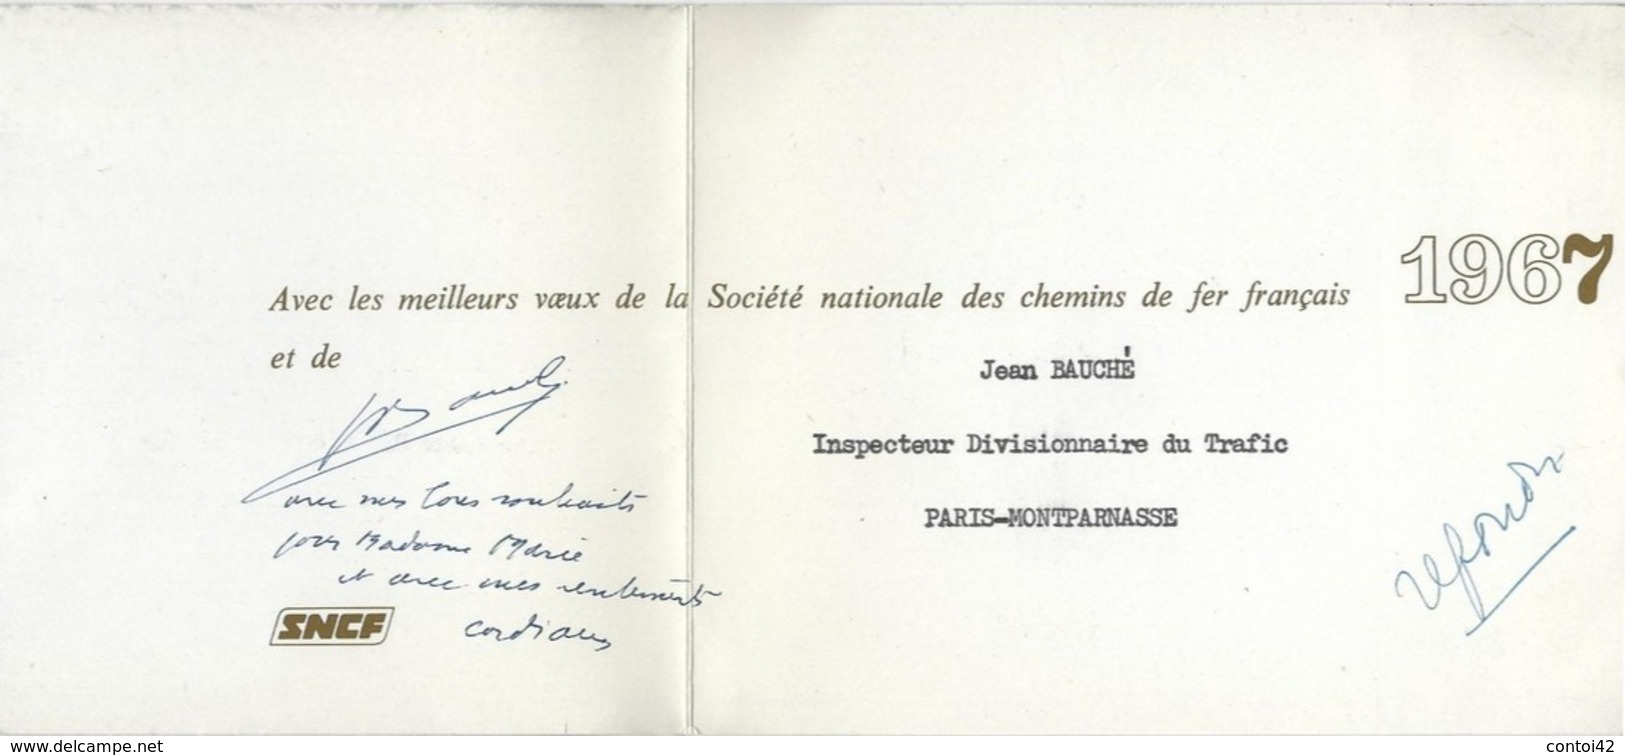 CARTE DE VOEUX 1967 SOCIETE NATIONALE DES CHEMINS DE FER FRANCAIS TRAIN GARE PARIS MONTPARNASSE - Railway